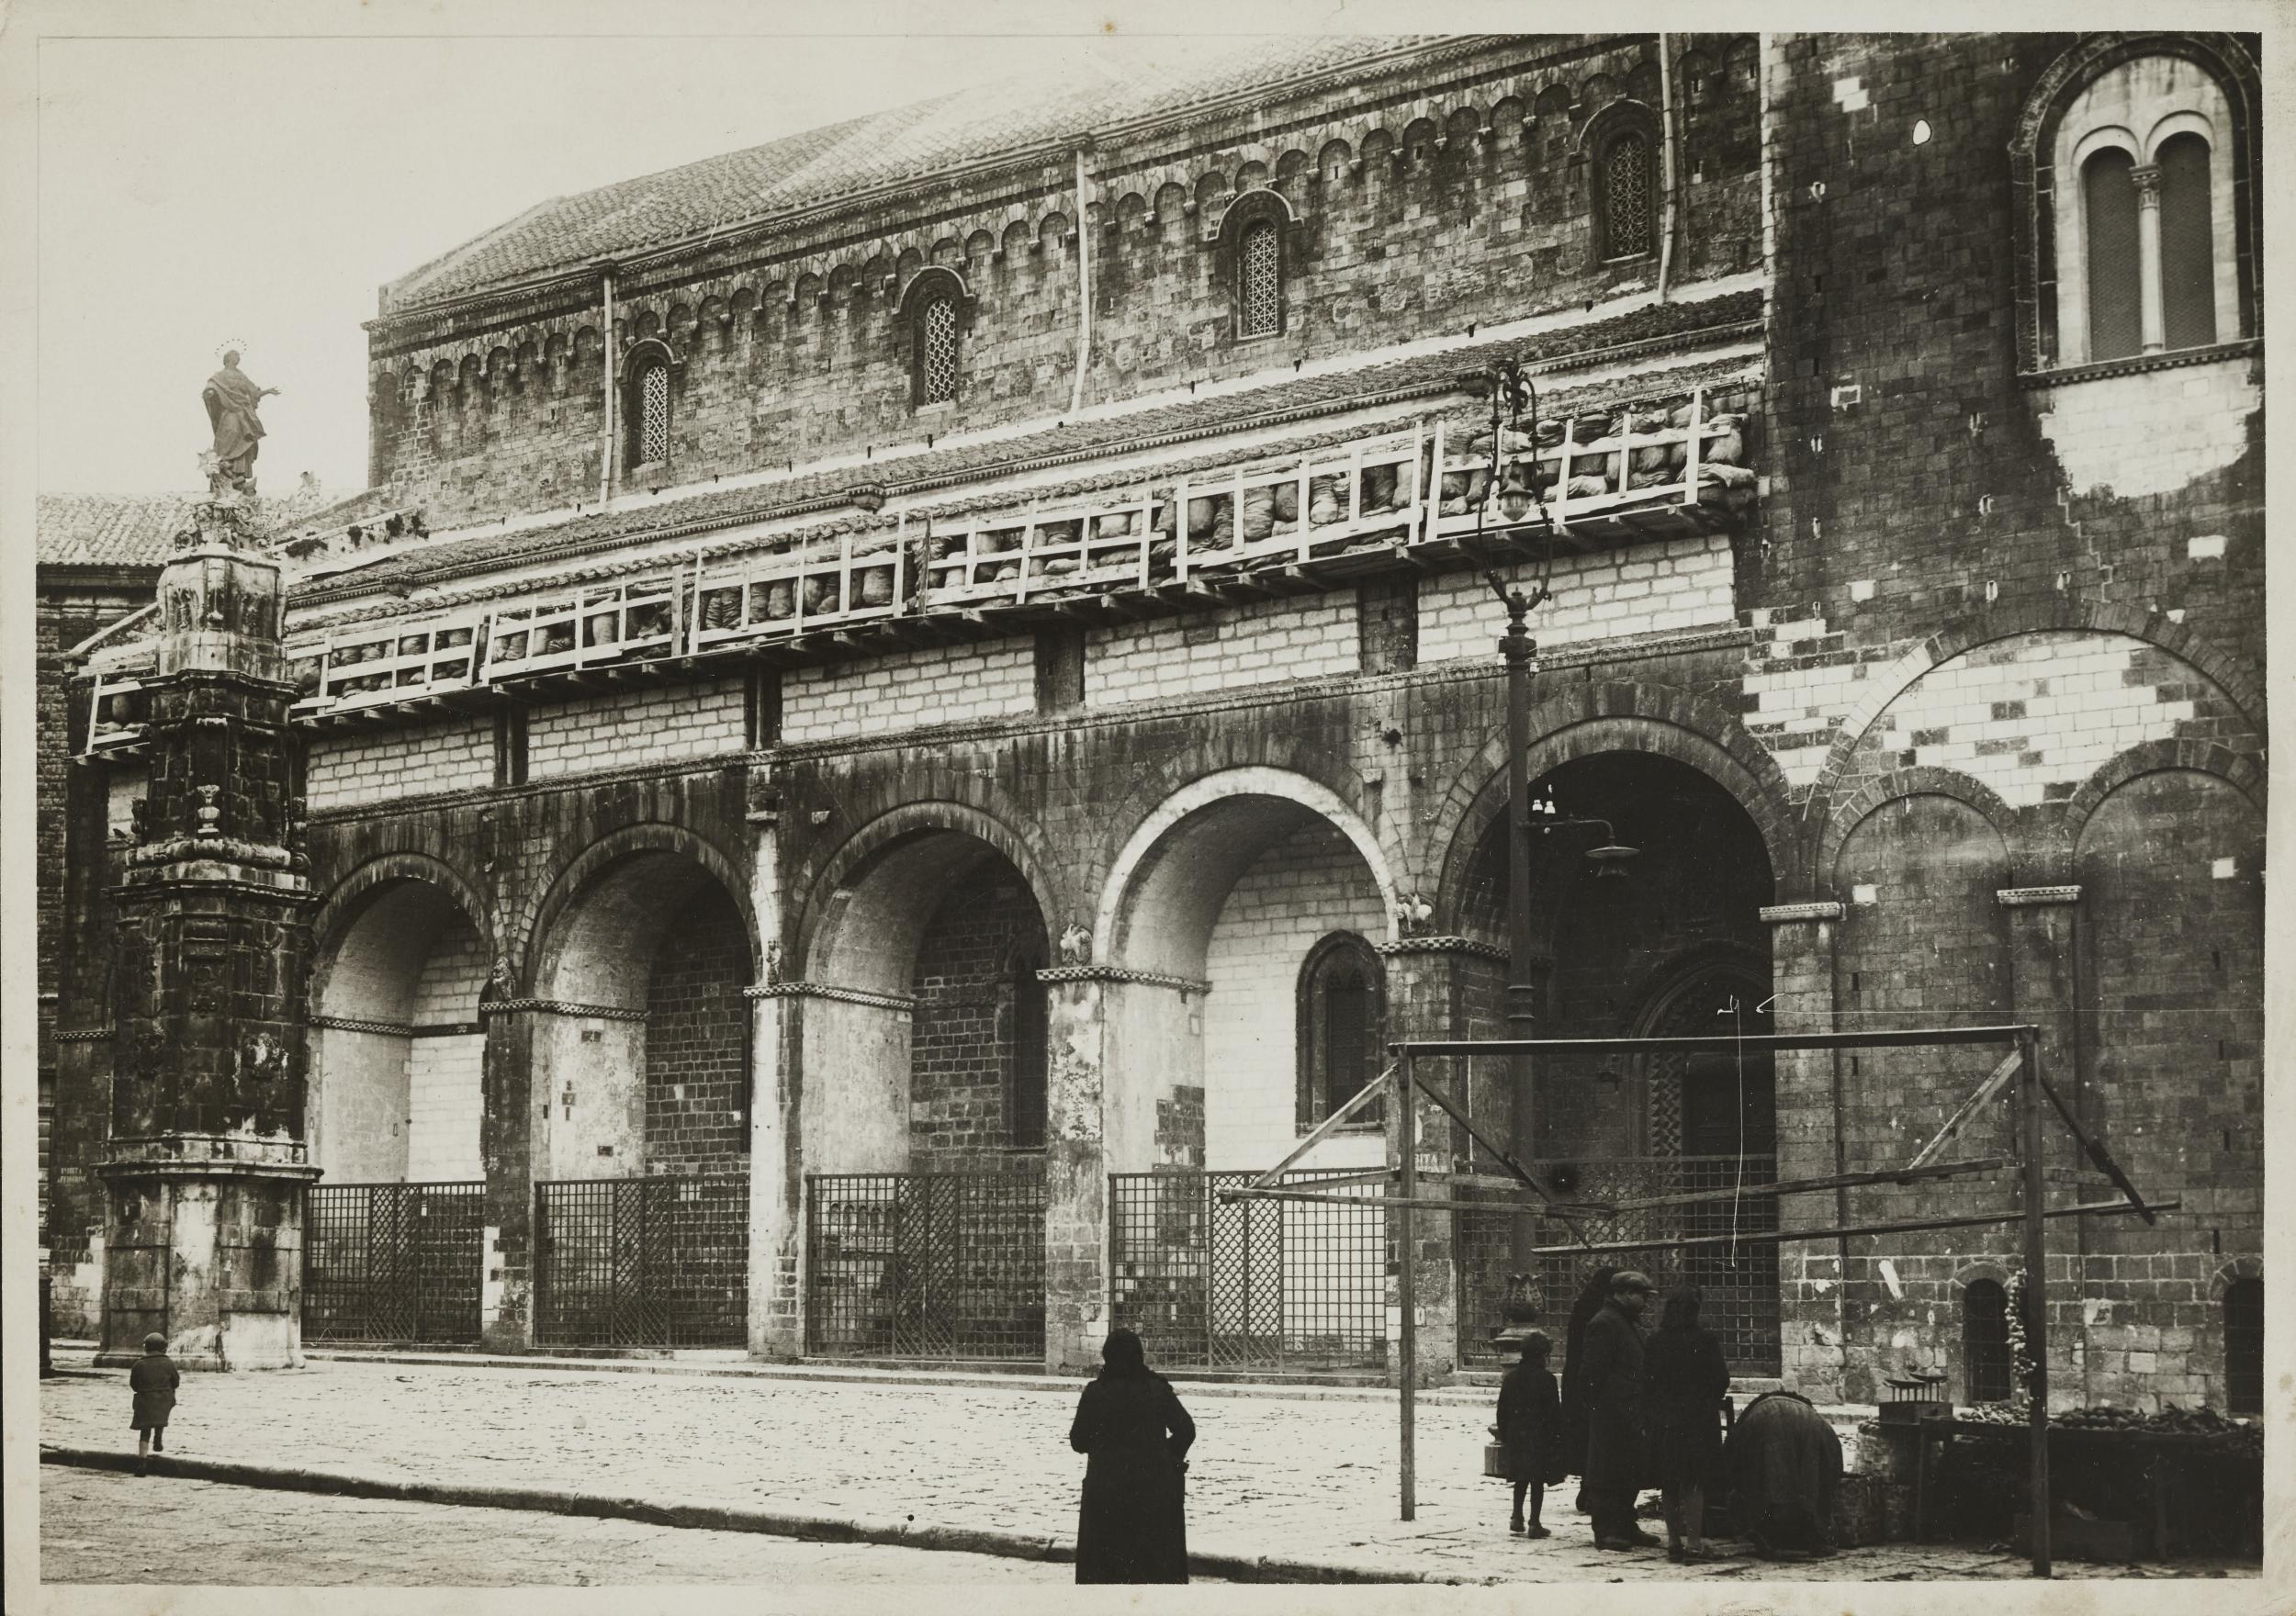 Fotografo non identificato, Bitonto - Cattedrale, esaforato della navata esterna, 1941, gelatina ai sali d'argento/carta, MPI6022892